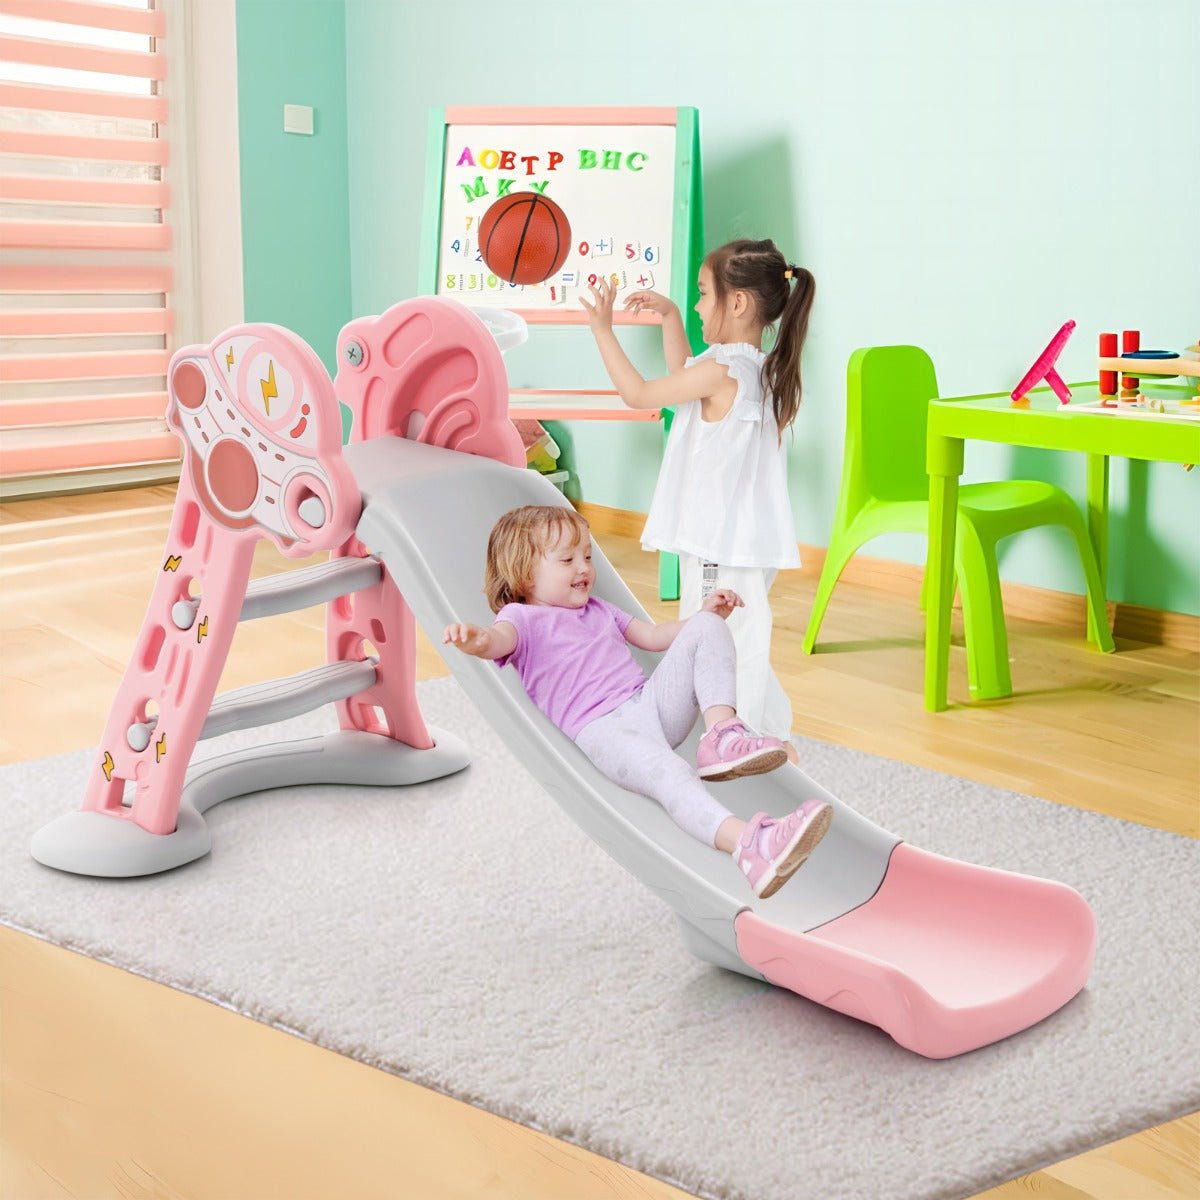 Hoop Dreams in Pink: Toddler Playset